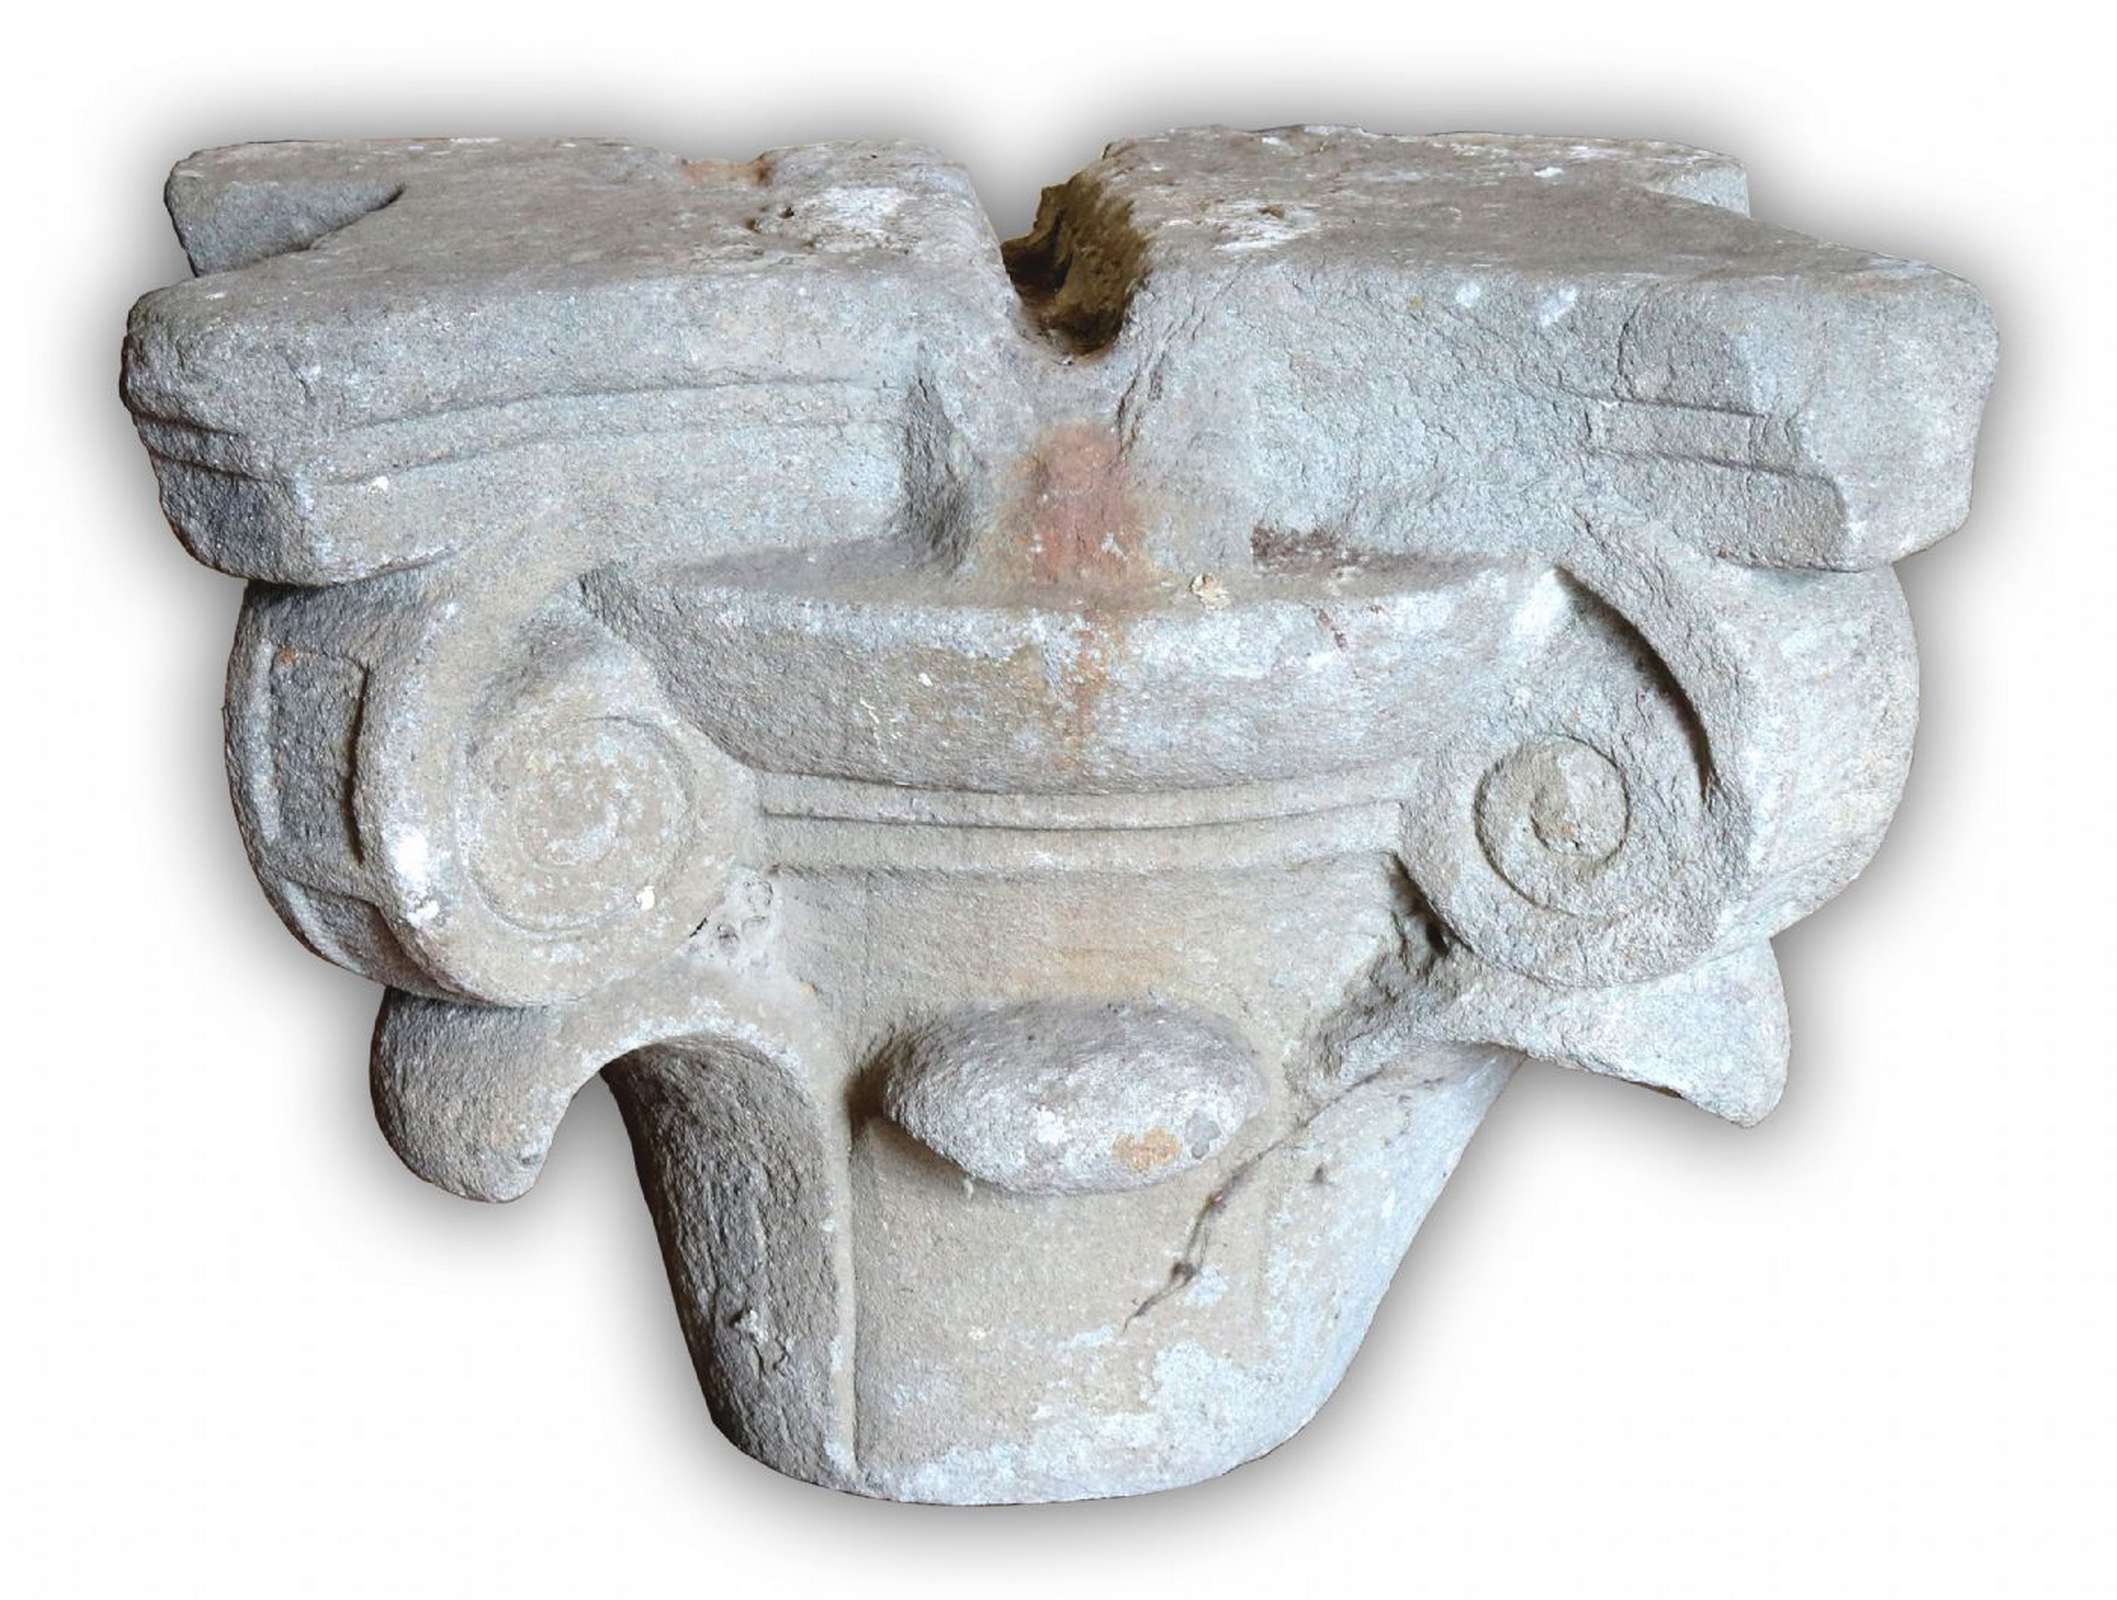 Antico capitello in pietra. Epoca 1400. - Capitelli basi per colonne - Architettura - Prodotti - Antichità Fiorillo